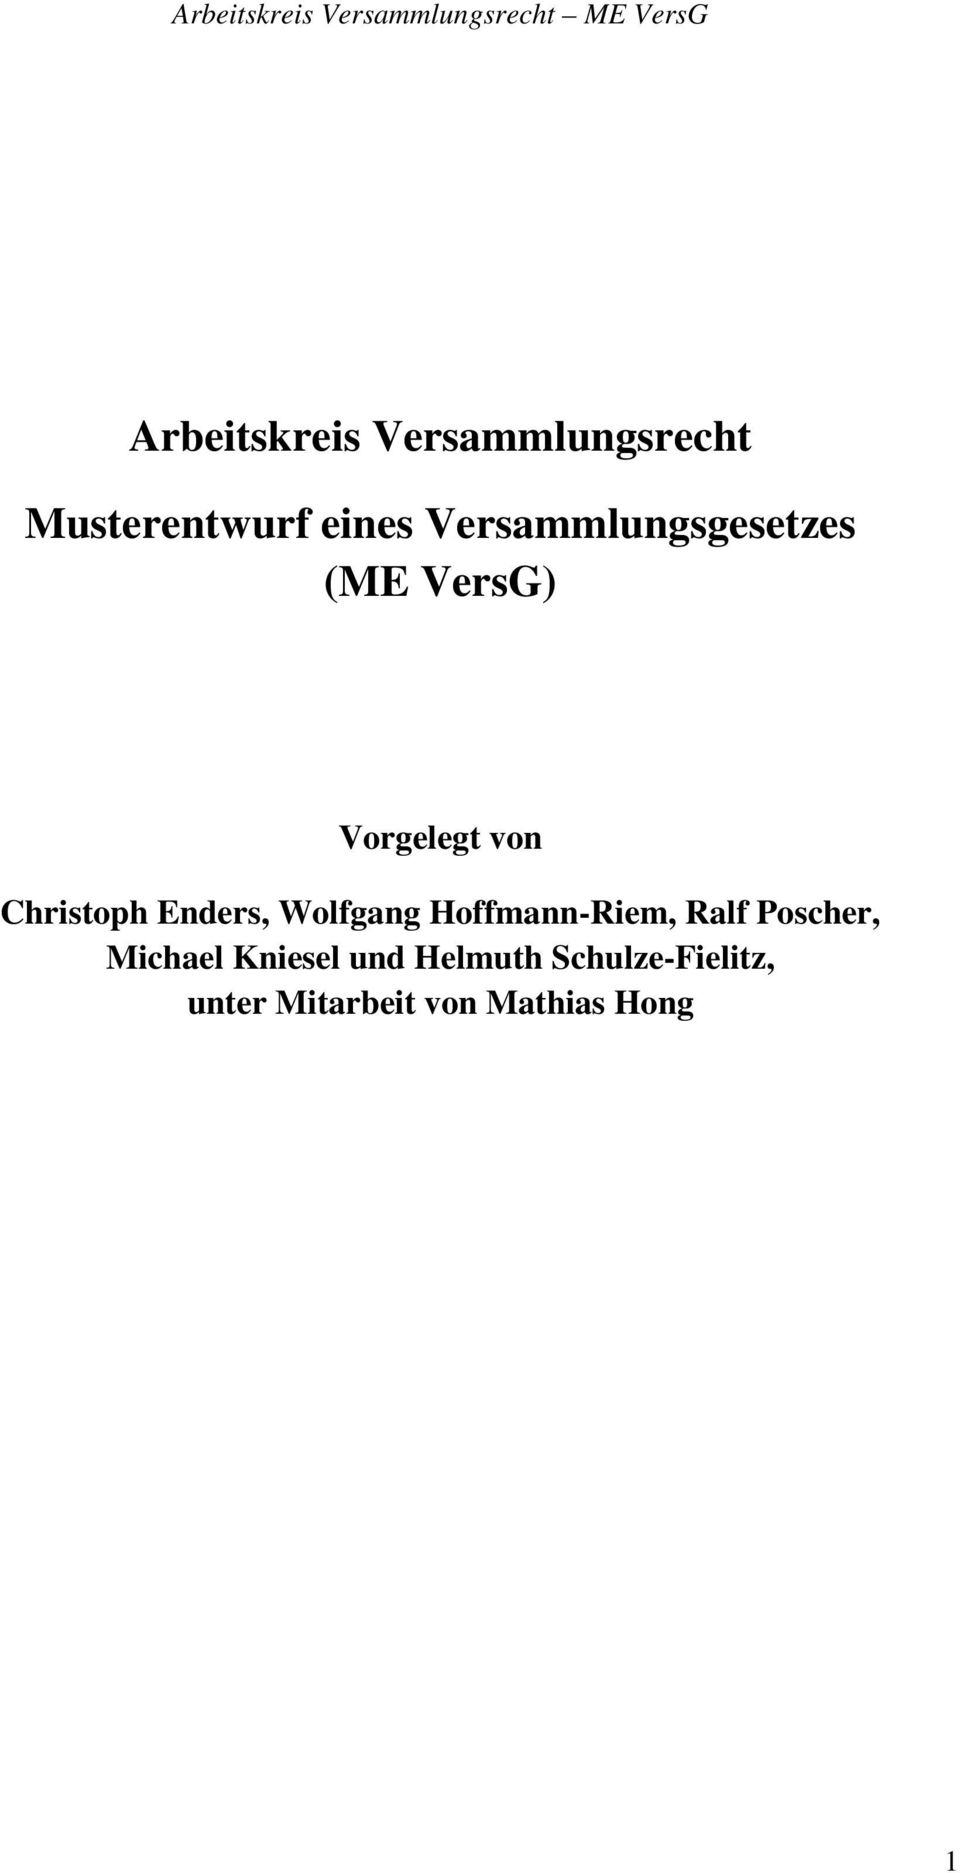 Enders, Wolfgang Hoffmann-Riem, Ralf Poscher, Michael